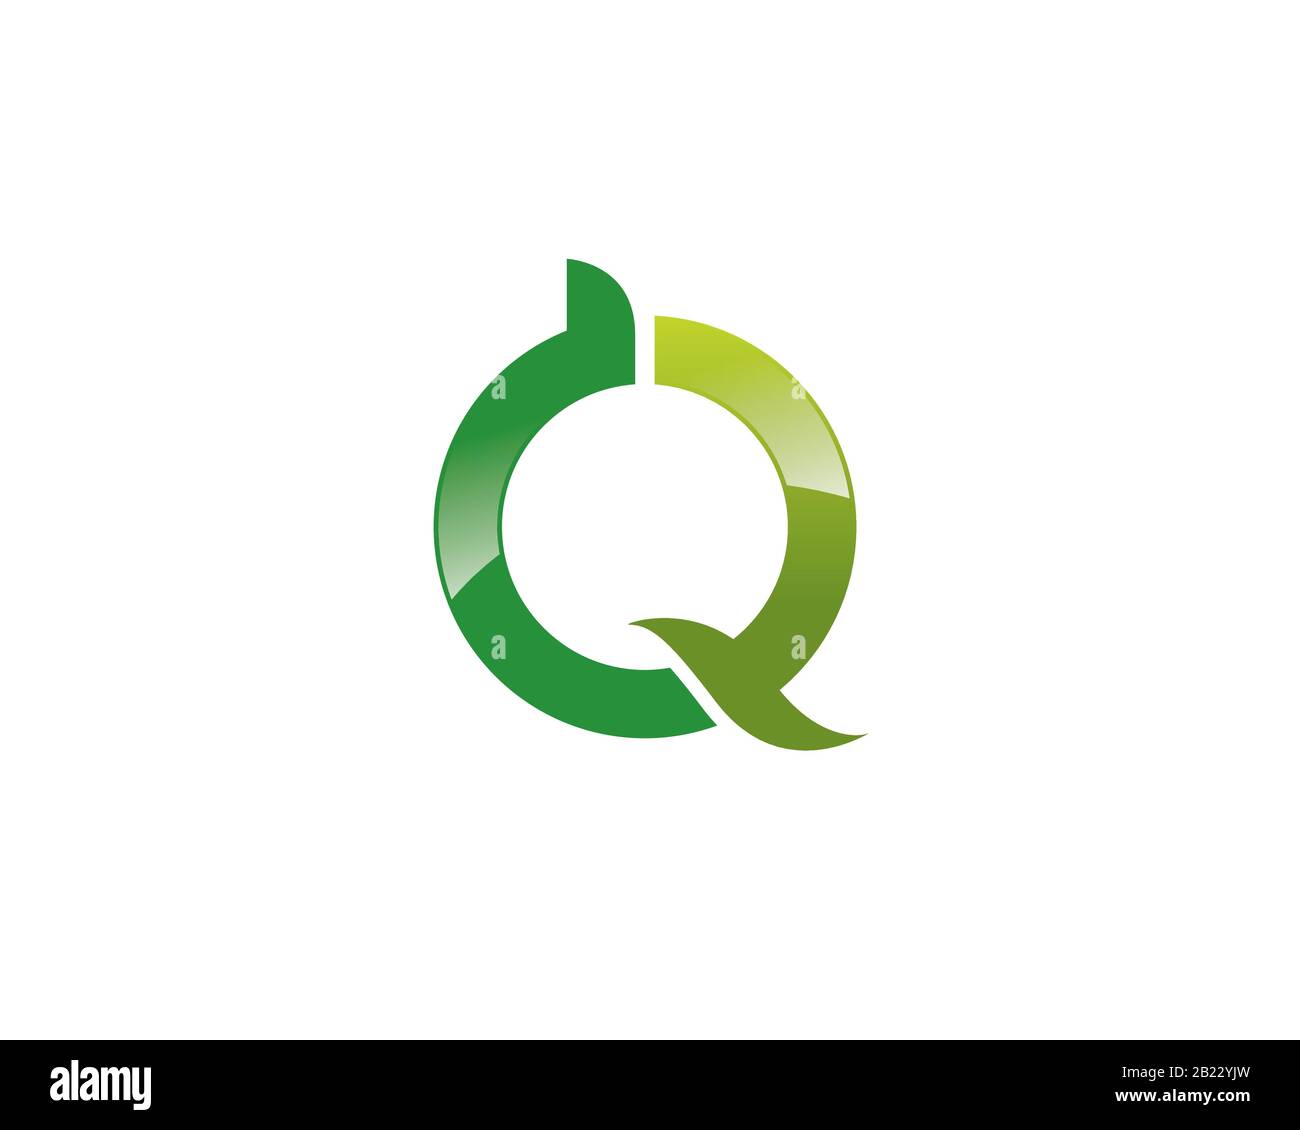 monogramma anagramma logo lettermark della lettera a d q o ecologia dell'ambiente verde Illustrazione Vettoriale